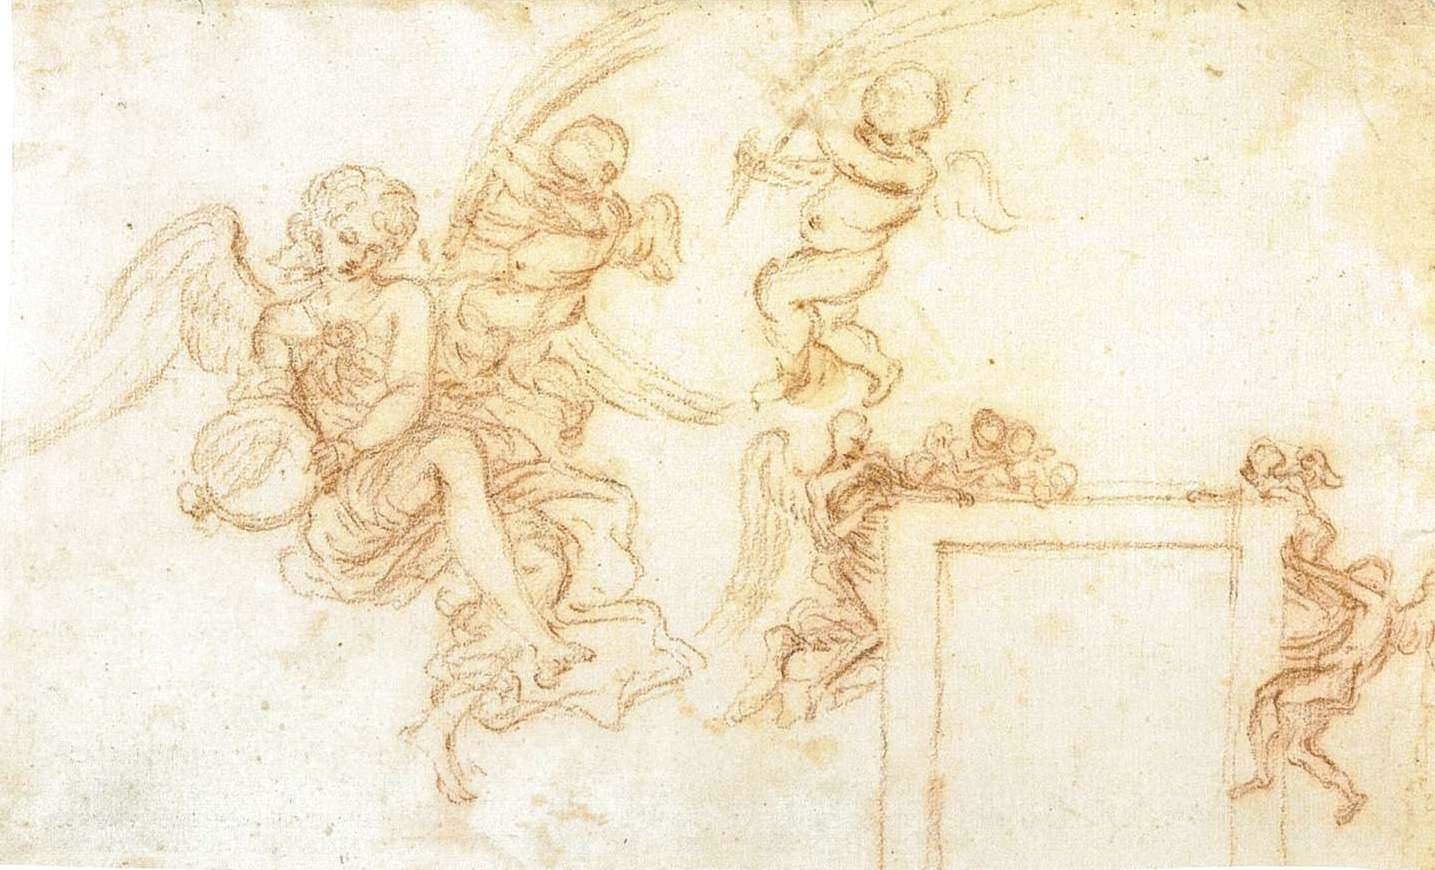 Gian+Lorenzo+Bernini-1598-1680 (131).jpg